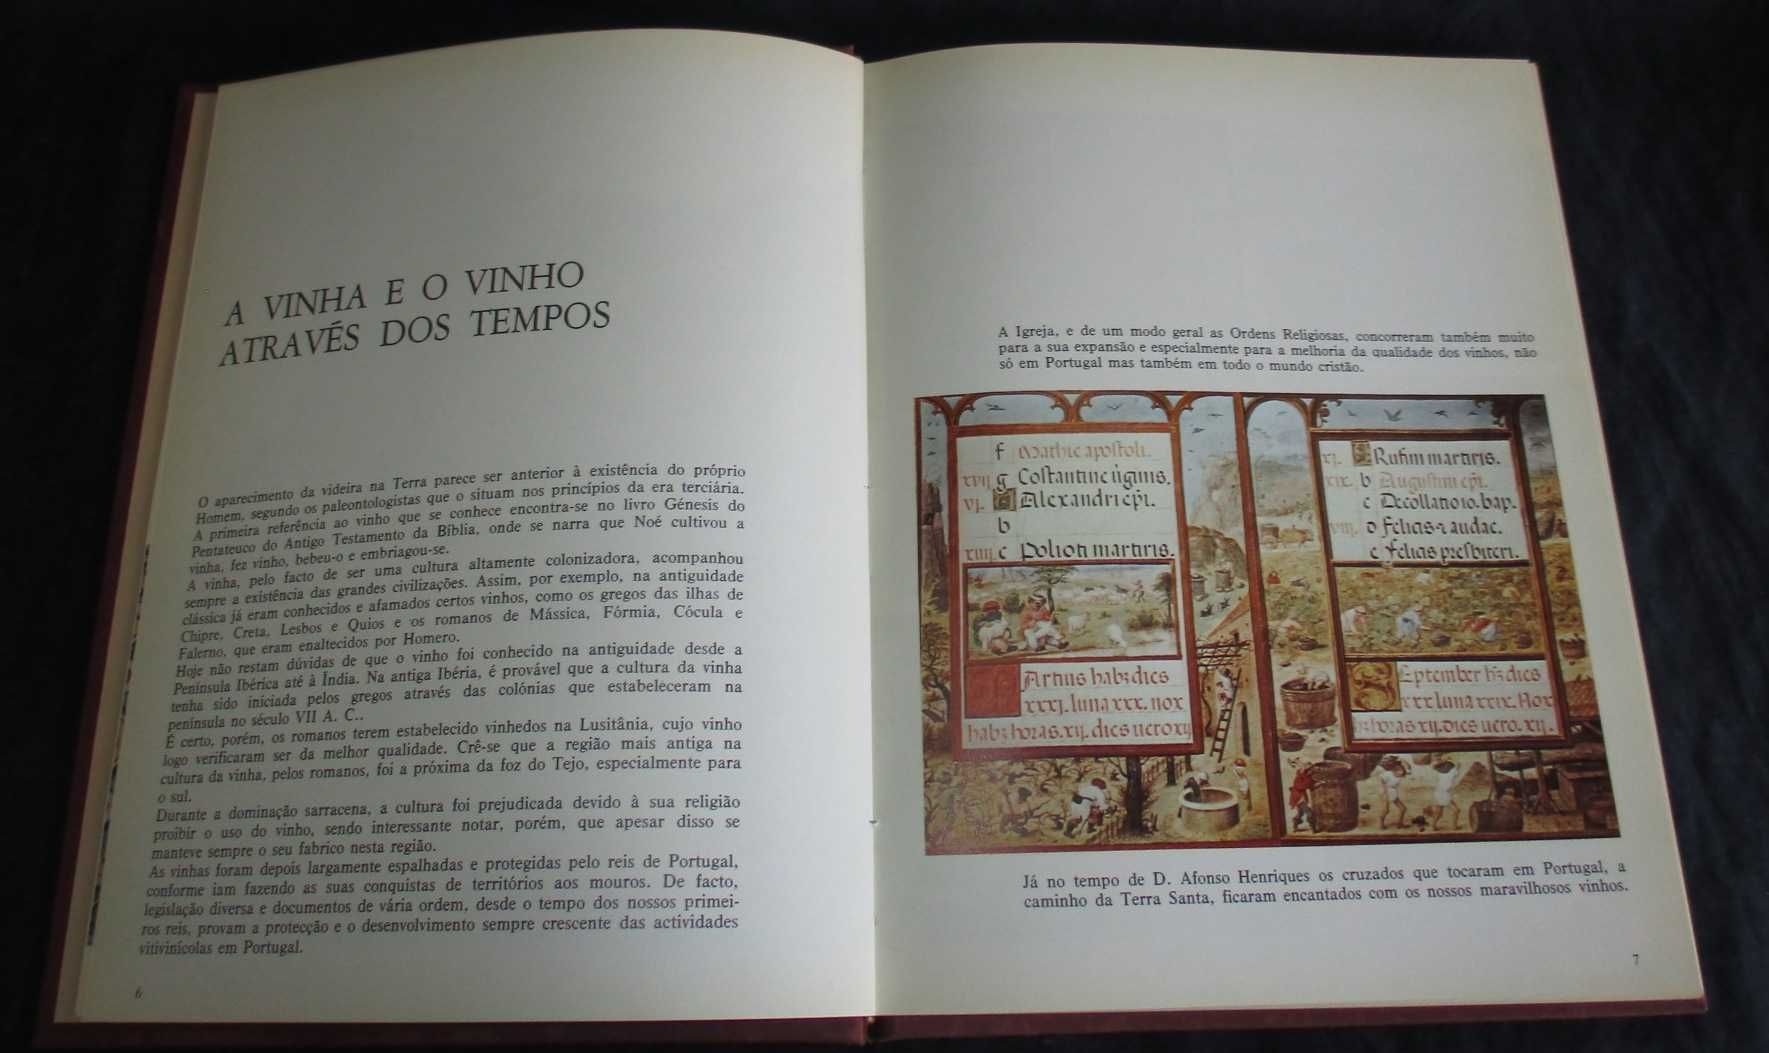 Livro Vinhos do Nosso País Bento de Carvalho, Lopes Correia